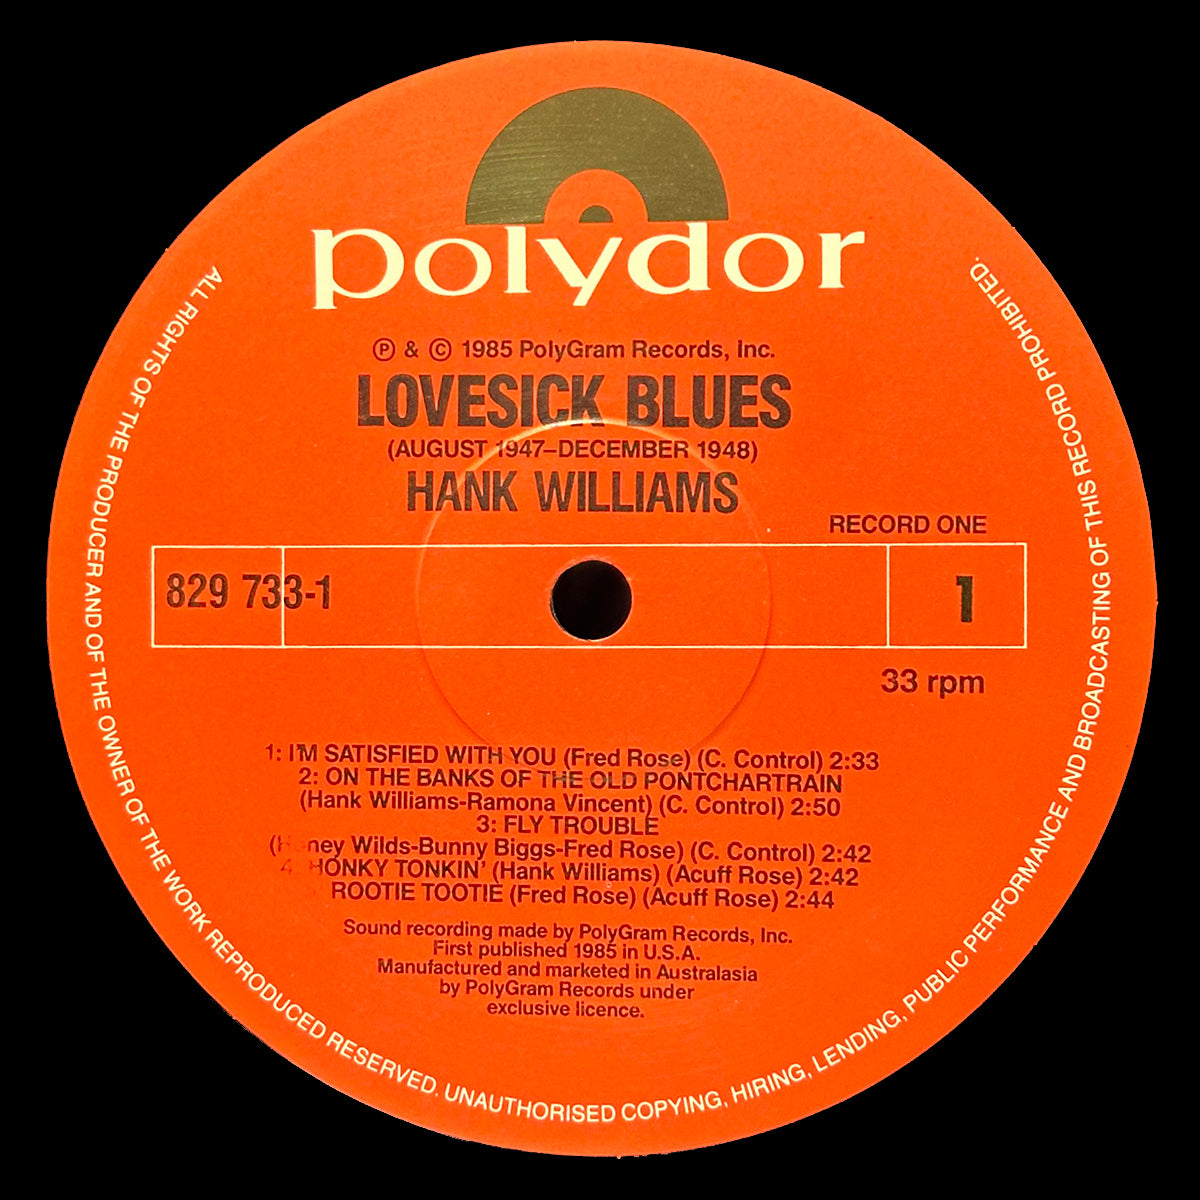 Lovesick Blues (August 1947 - December 1948)